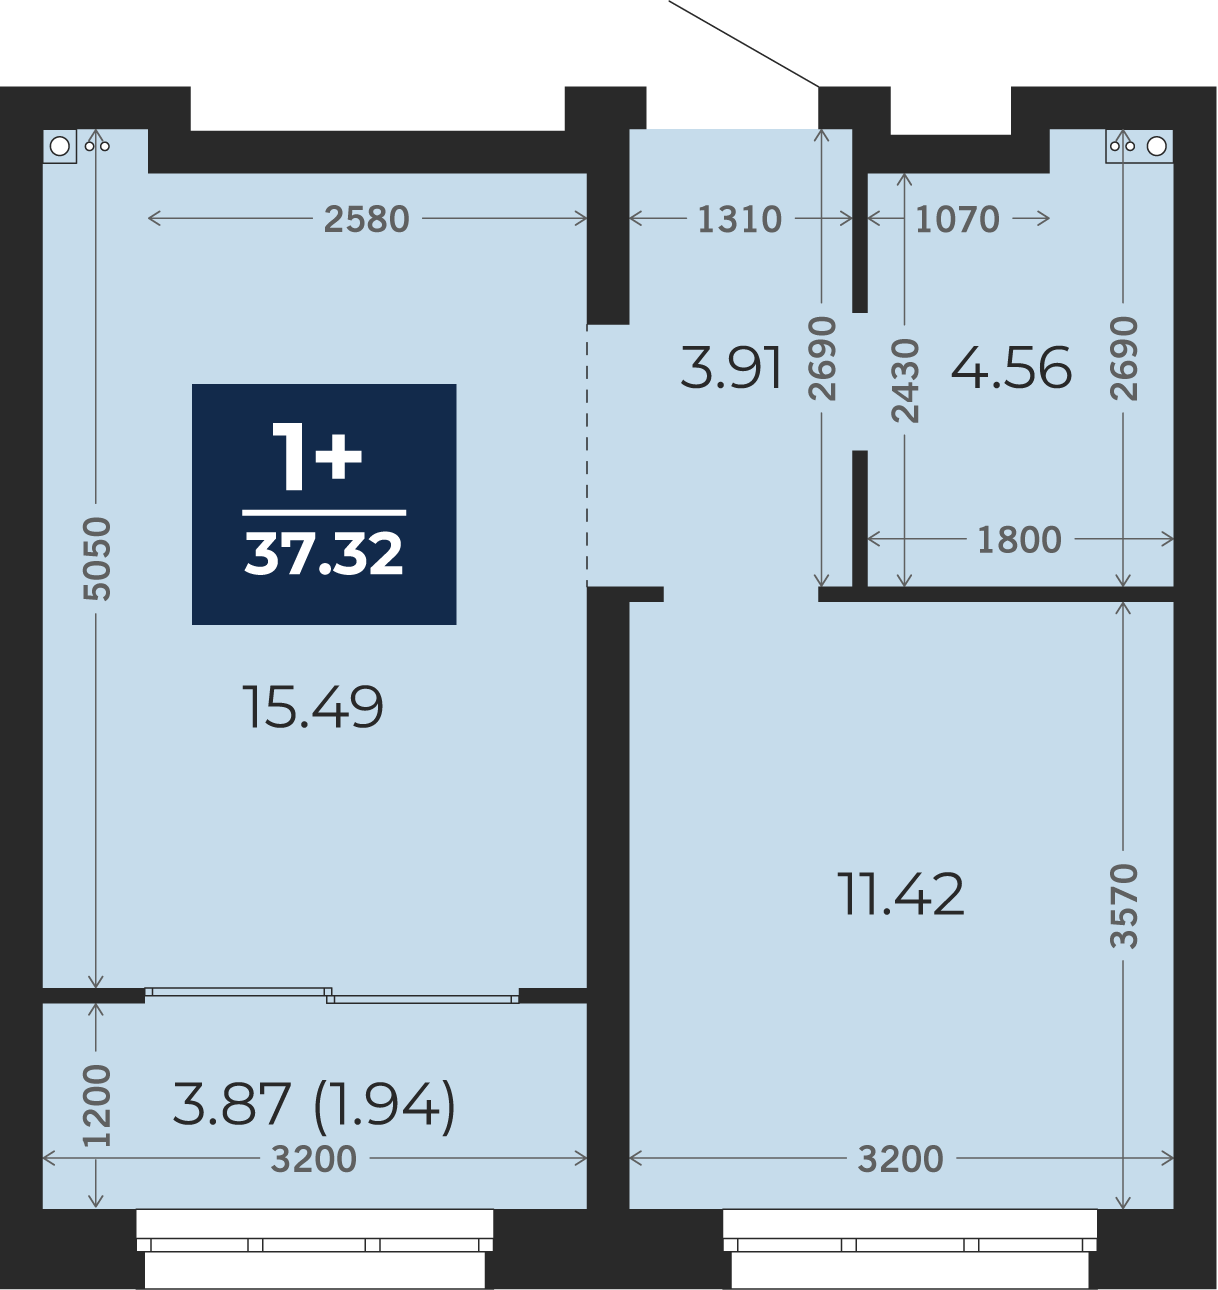 Квартира № 37, 1-комнатная, 37.32 кв. м, 2 этаж